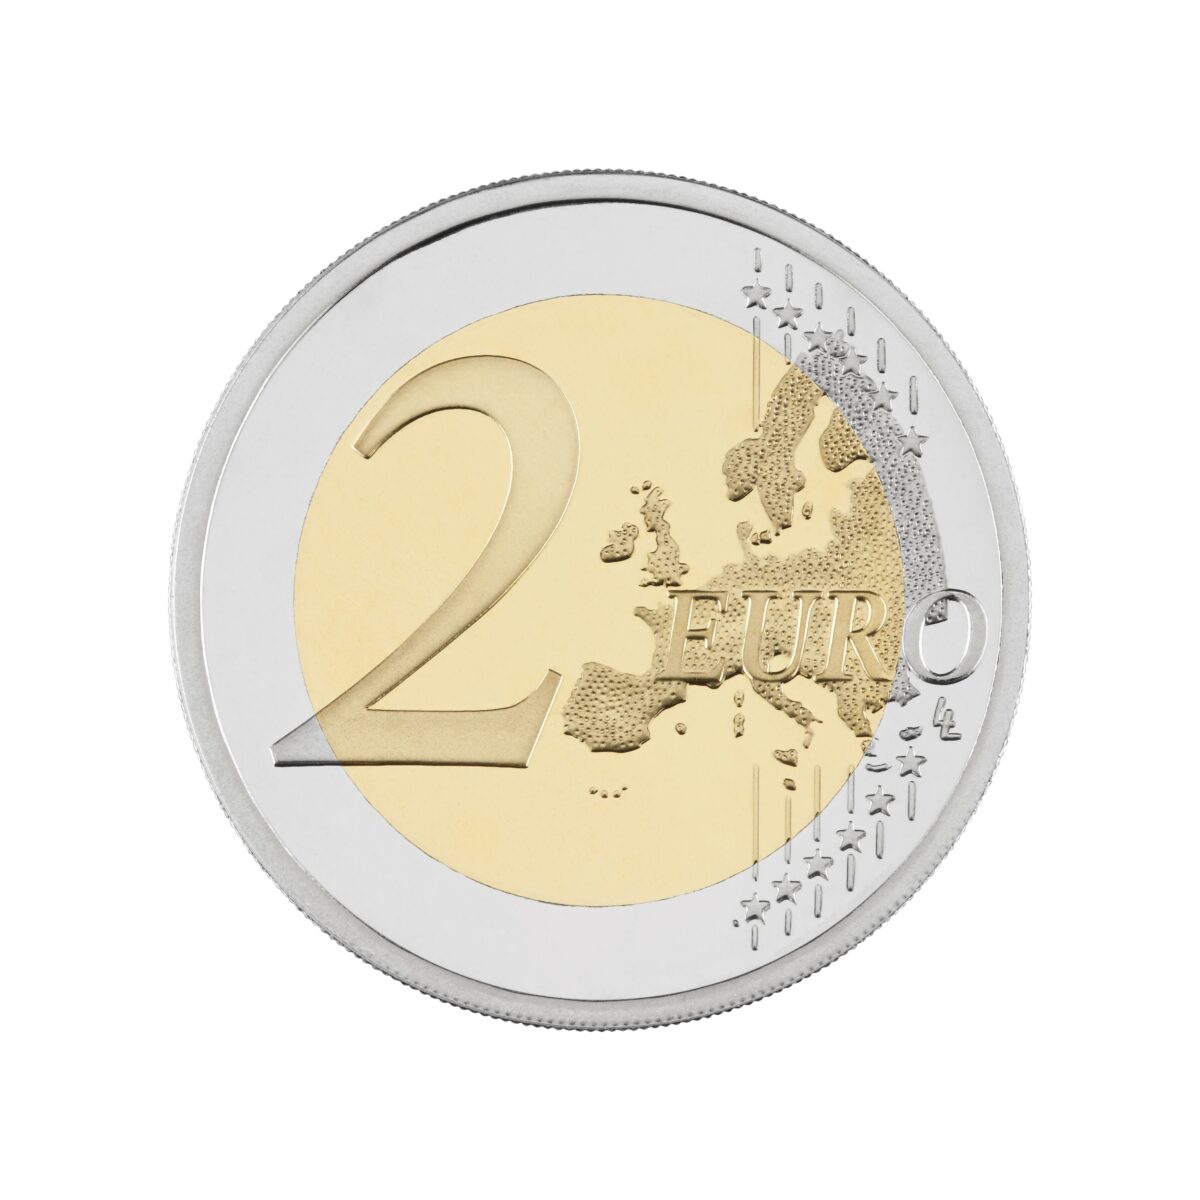 Prigodna kovanica od 2 eura zajedni ka strana